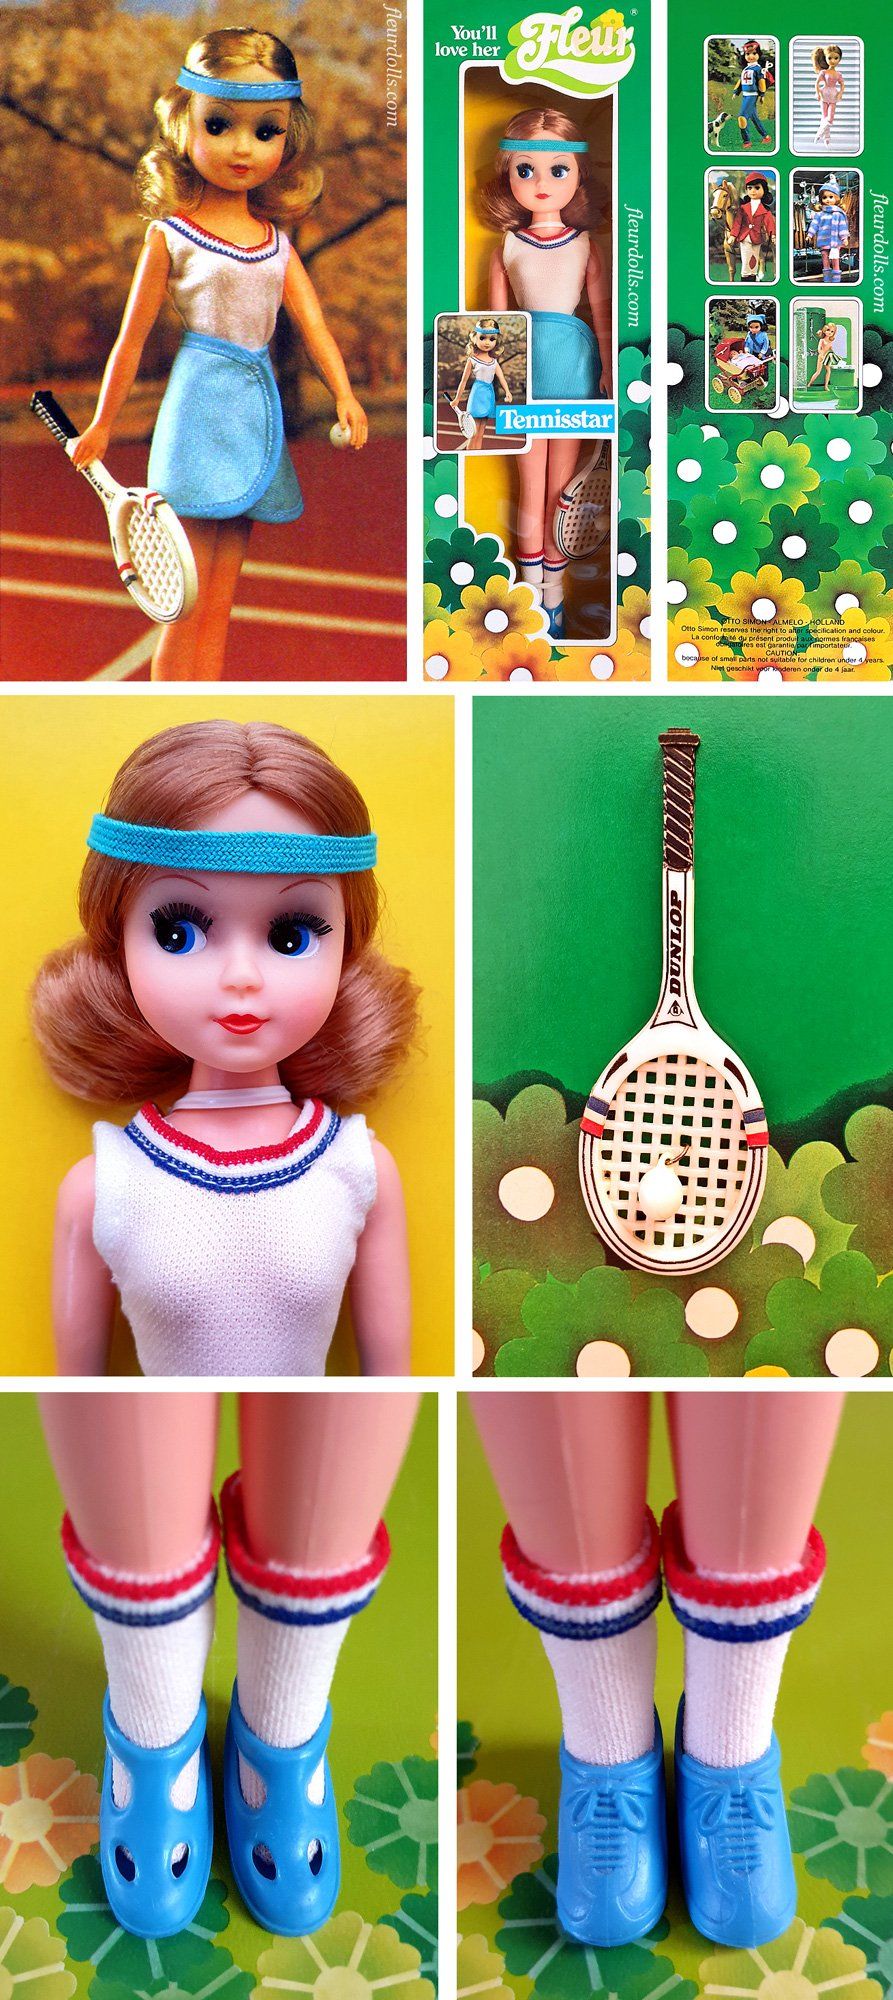 Tennis player Fleur doll Tennisstar 1980s Dutch fashion doll Otto Simon